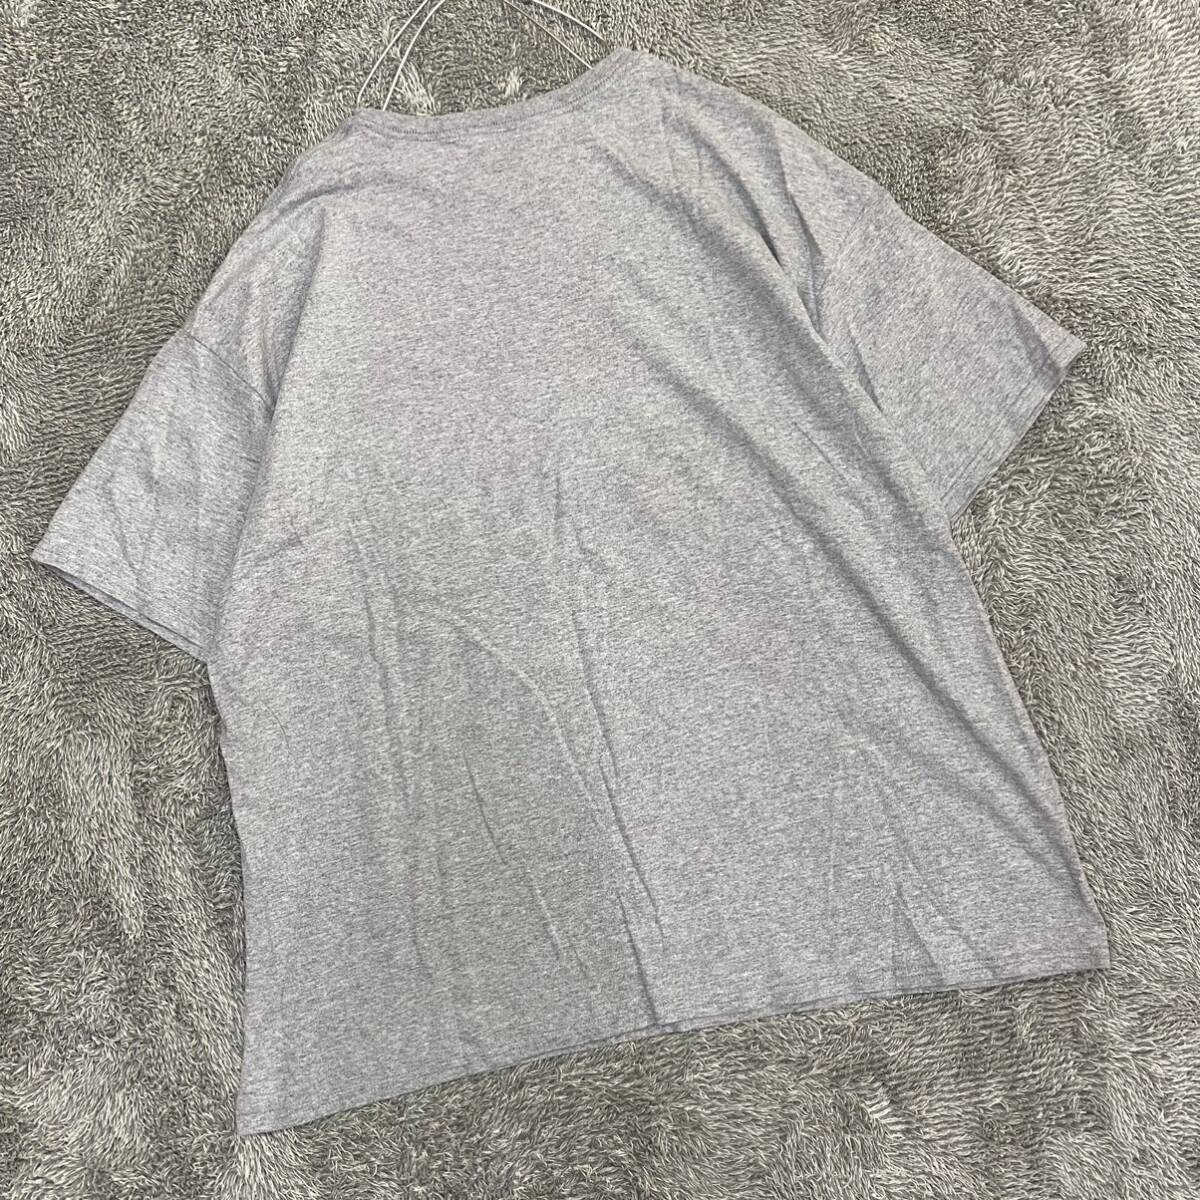 VINTAGE ヴィンテージ Life style Tシャツ 半袖カットソー サイズXXXL グレー 灰色 メンズ トップス 最落なし （S18）_画像2